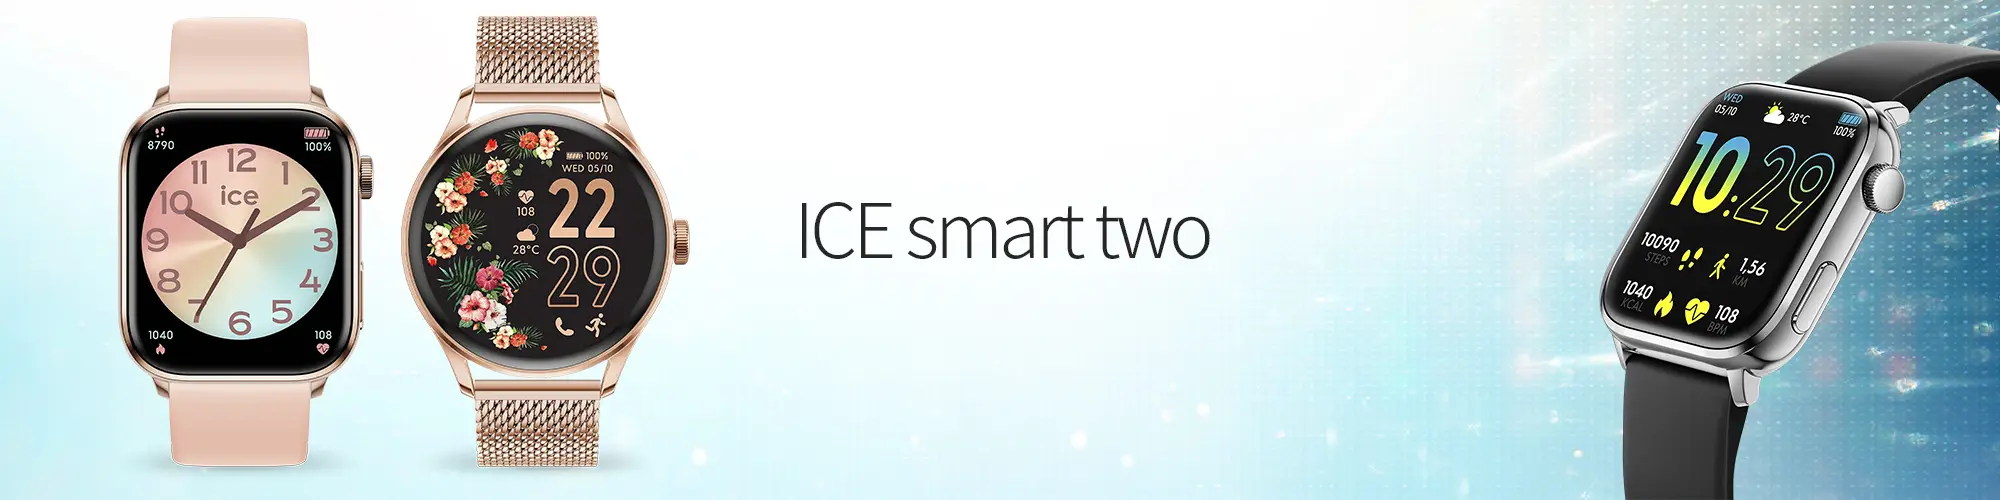 Smartwatches från ICE Snygga och smarta klockor som passa alla